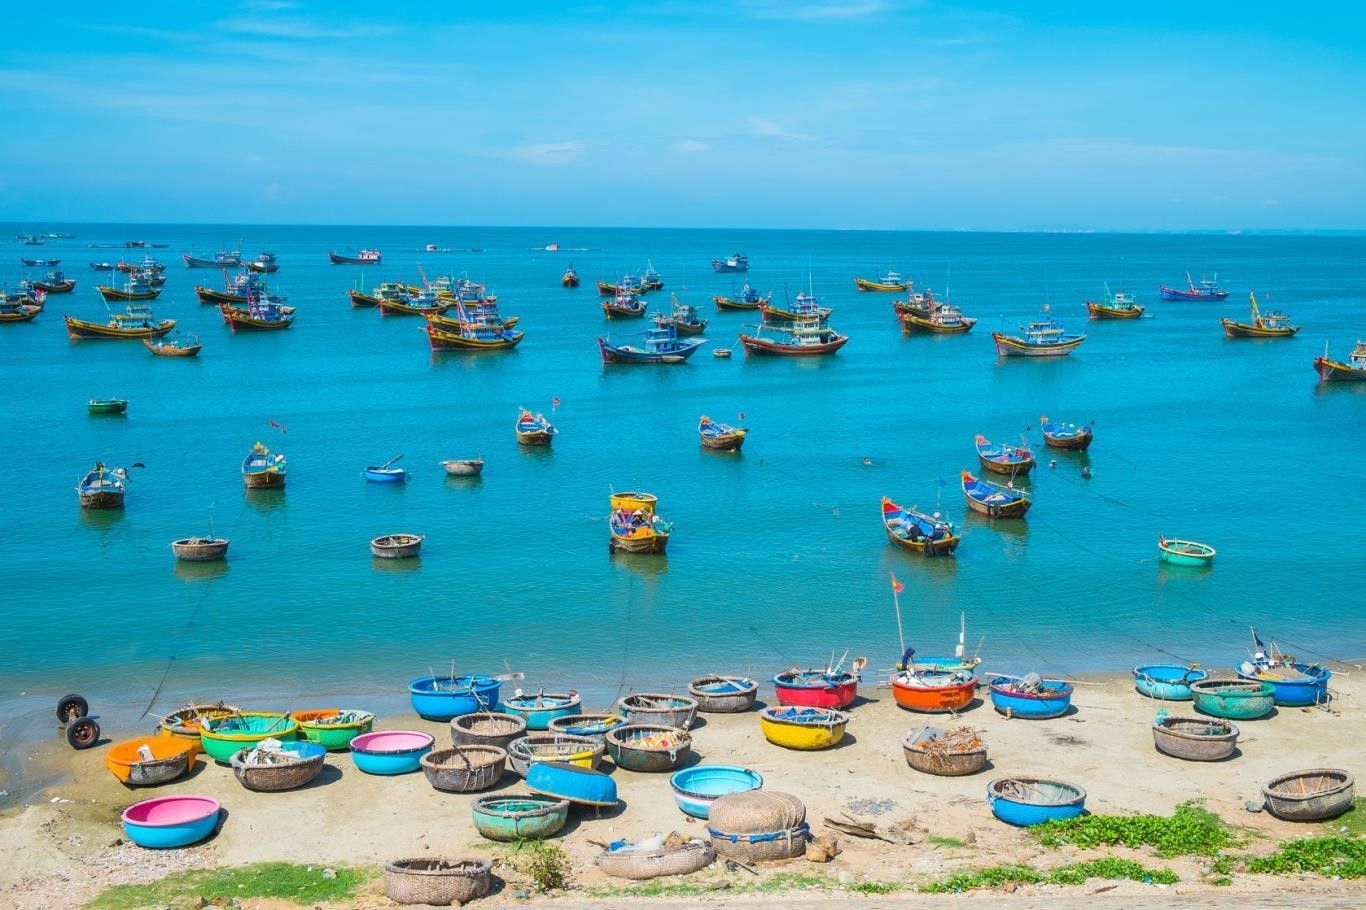 Mũi Né - Phan Thiết là một điểm du lịch nổi tiếng ở Việt Nam, với bãi biển đẹp và cát trắng mịn, là nơi lý tưởng để thư giãn và tận hưởng mọi khoảnh khắc thú vị.